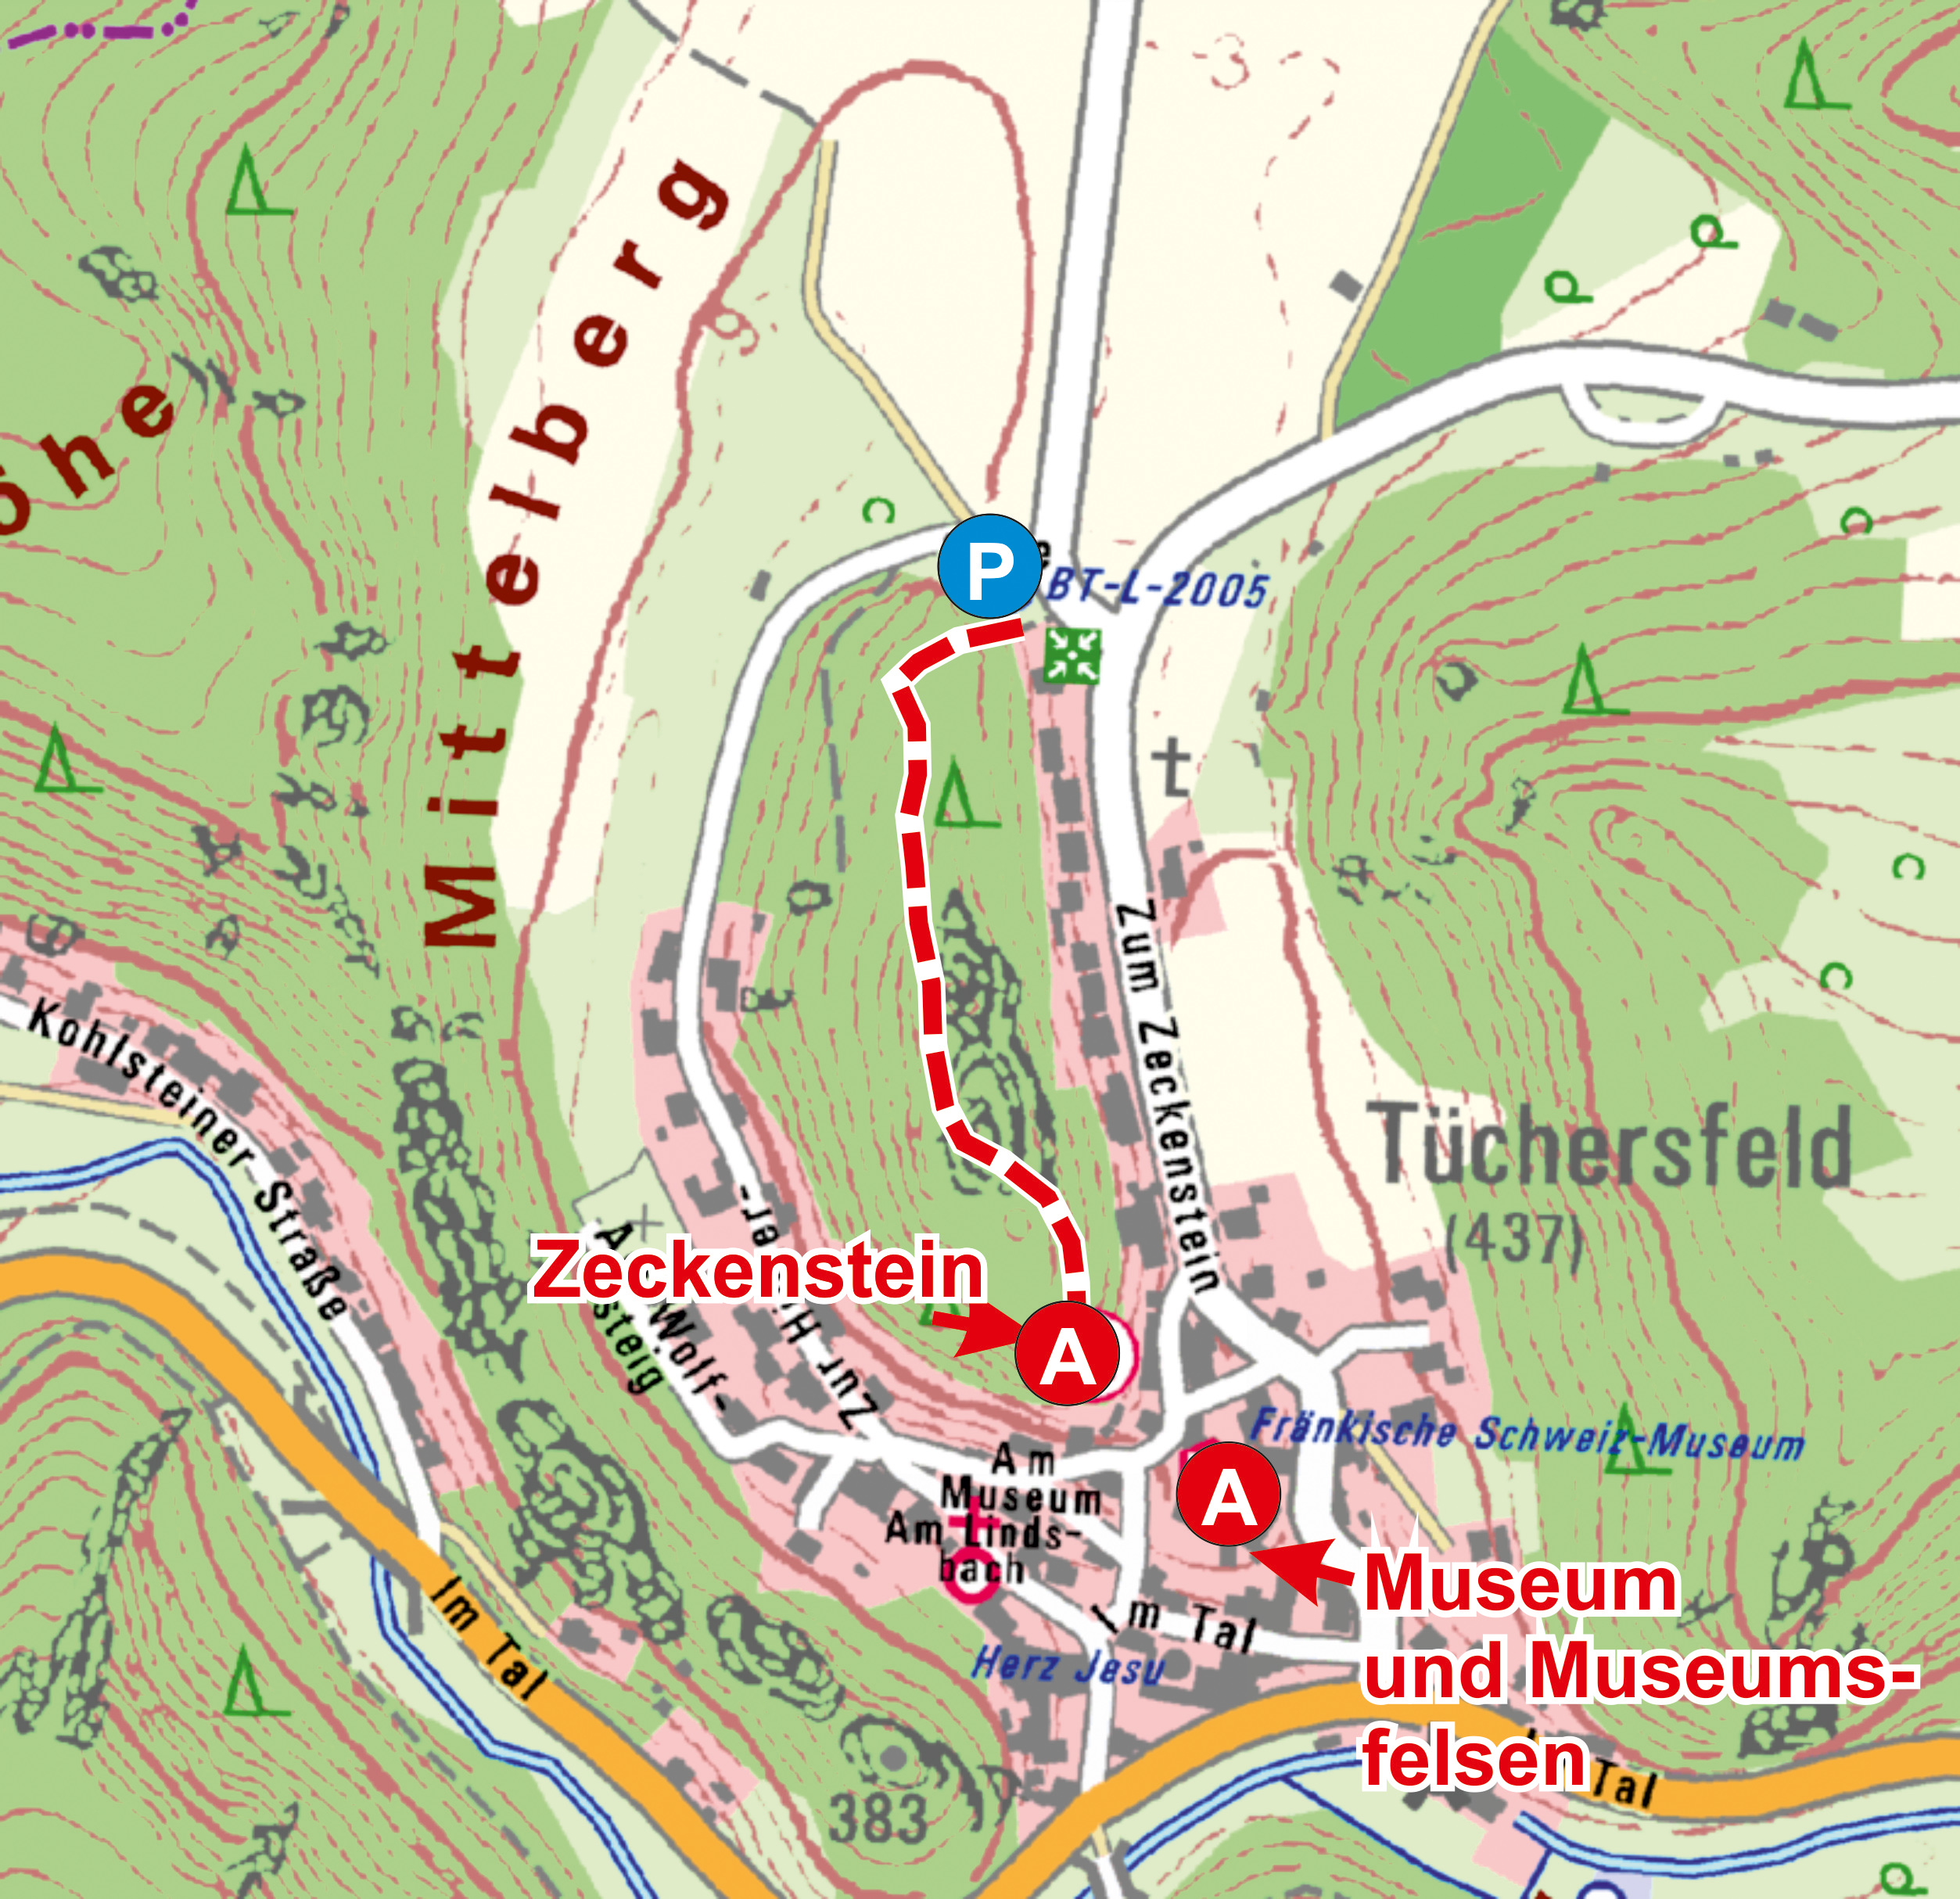 Abb. 16: Tüchersfeld: Anfahrtsparkplatz und Fußstrecke zum Zeckenstein und zum Museumsfelsen beim Judenhof